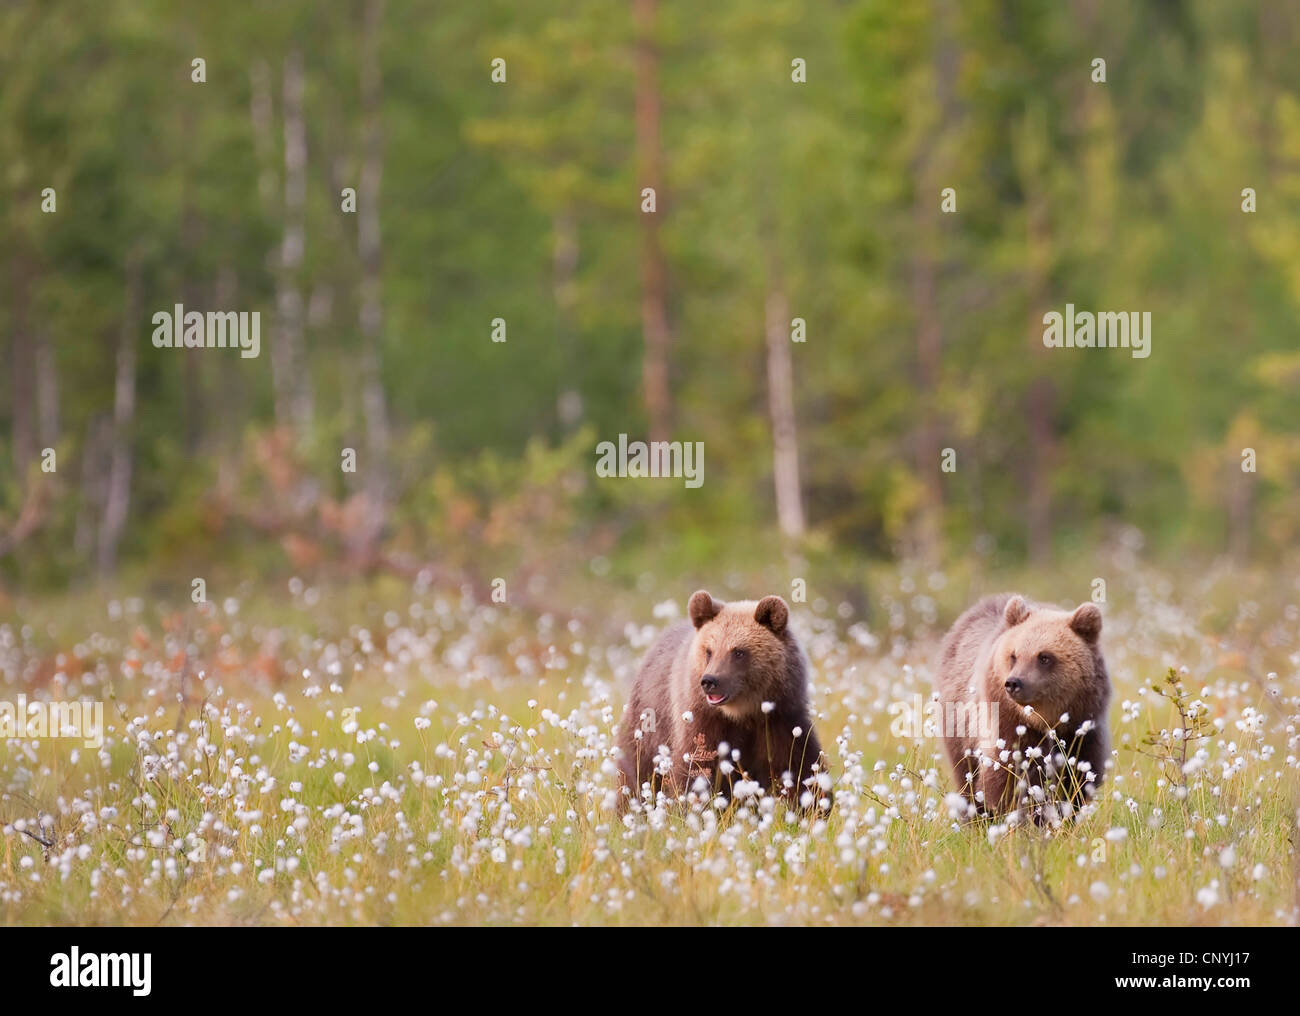 Unione l'orso bruno (Ursus arctos arctos), due giovani in piedi in erba di cotone in un luminoso bosco di conifere, Finlandia, Suomassalmi Foto Stock